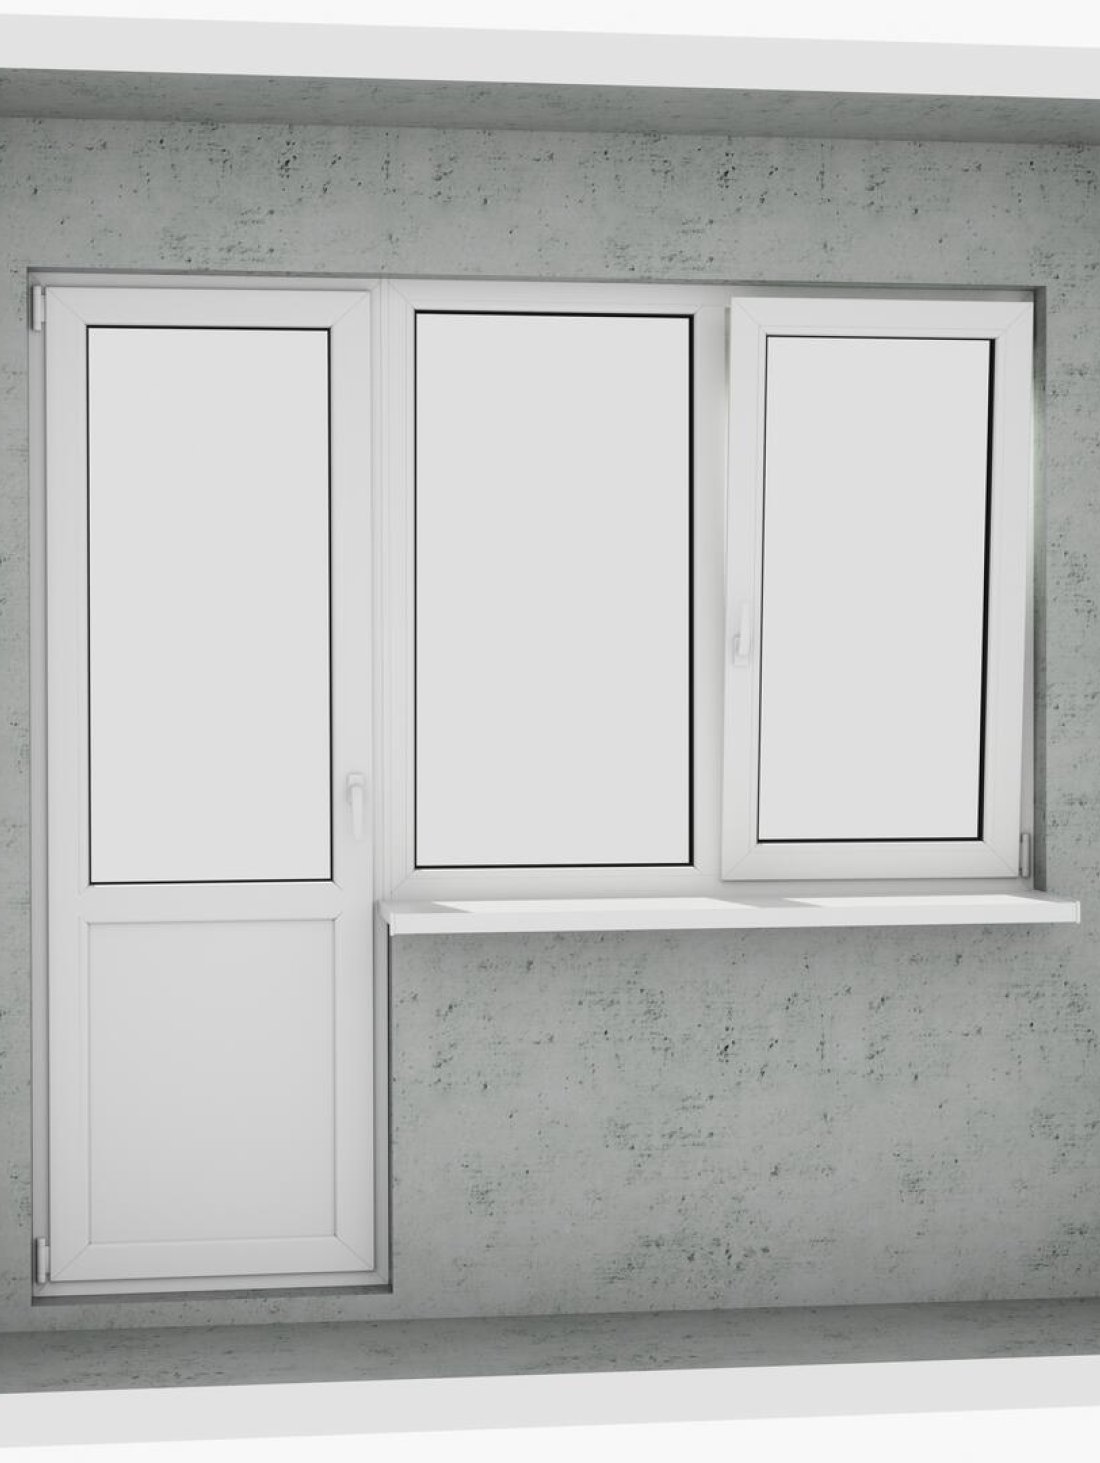 Выход на лоджию (балкон): бюджетный классический белый металлопластиковый балконный блок (дверь без режима проветривания, открывается 1 половинка окна) - Паритет